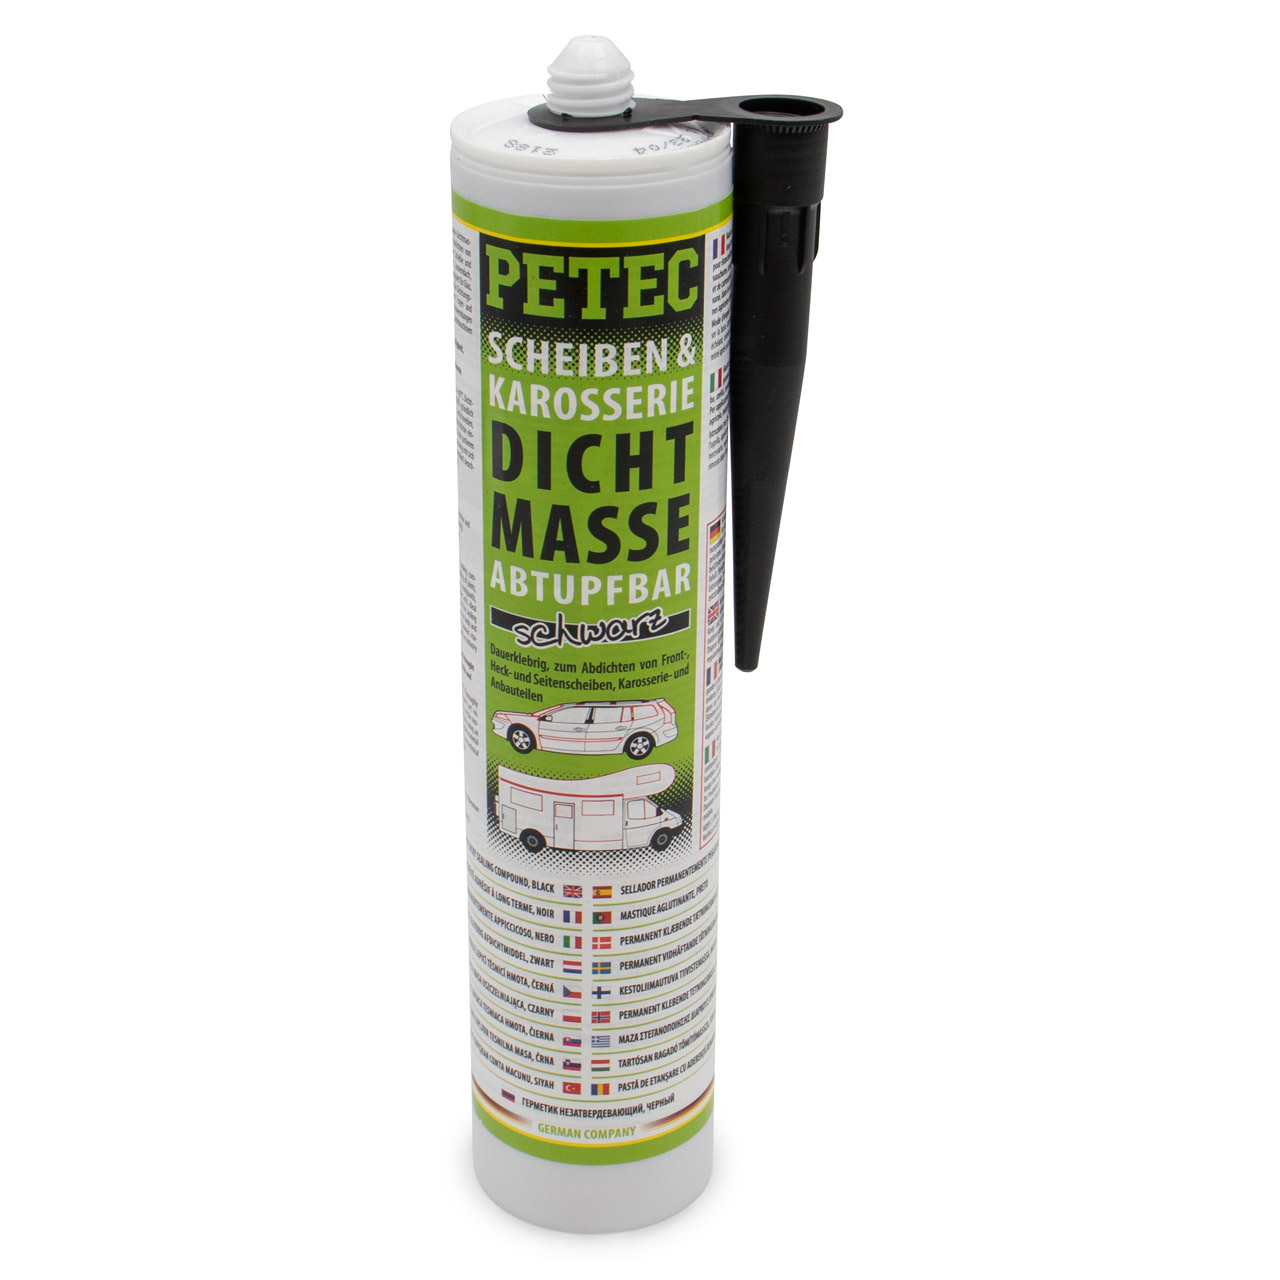 PETEC 83300 Scheiben & Karosserie Dichtmasse Scheibendichtmasse Abtupfbar schwarz 310ml